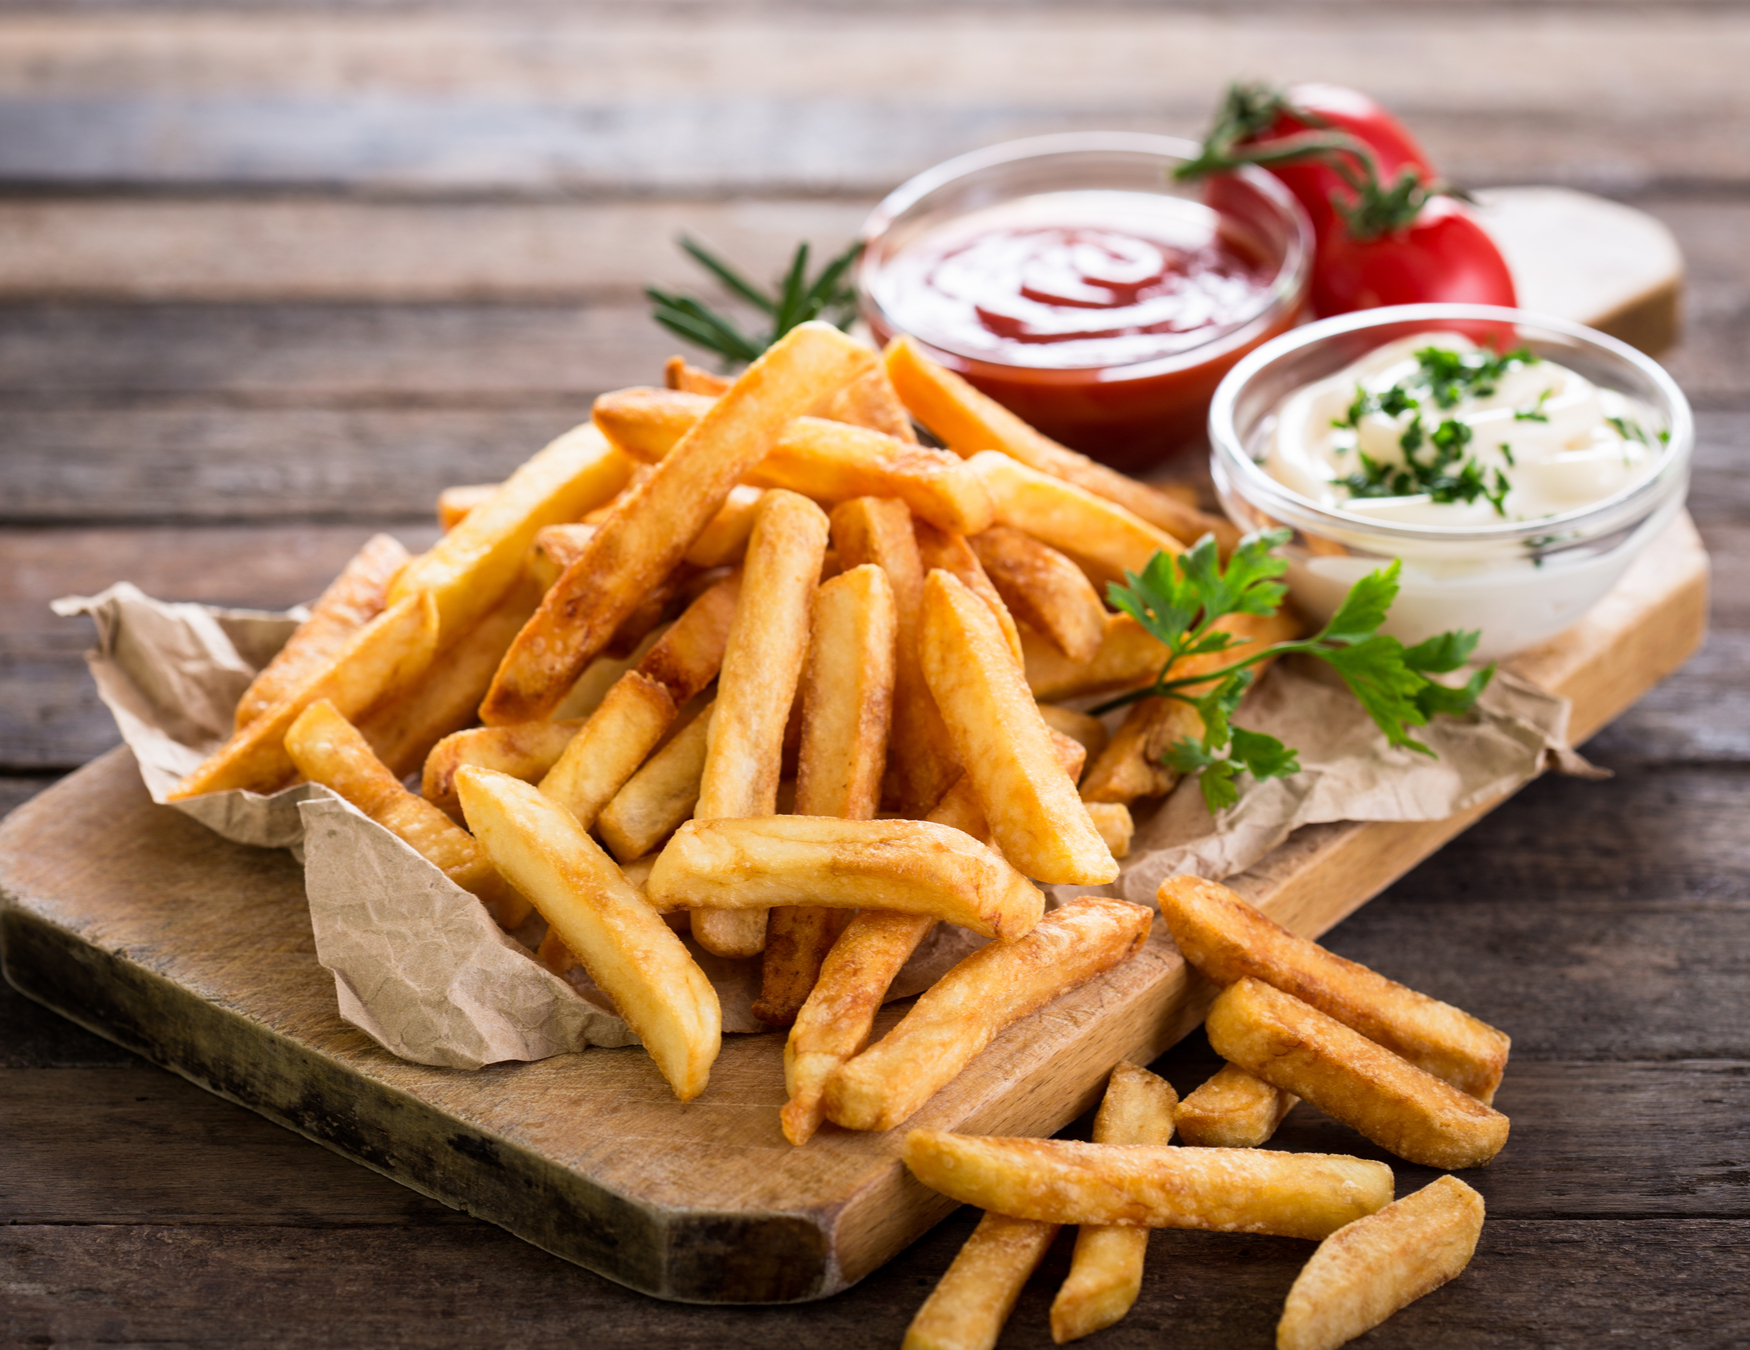 French fries originated in Paris in 1680.